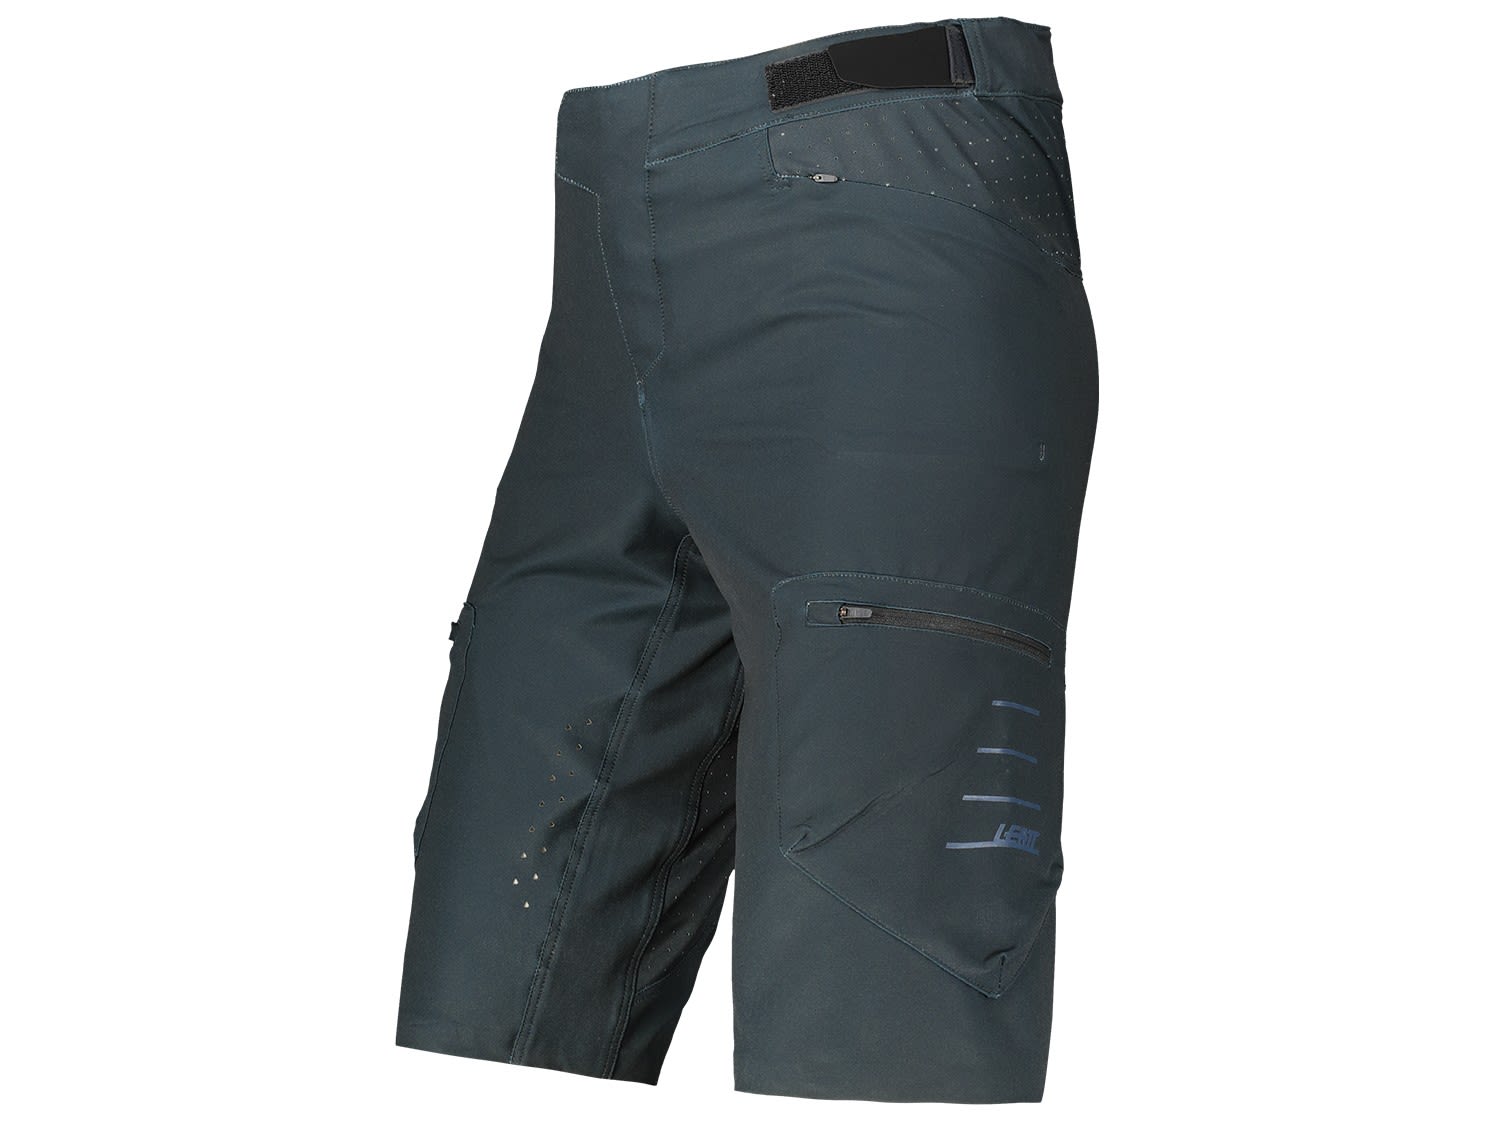 Leatt MTB All Mountain 2-0 Shorts Schwarz- Male Shorts- Grsse S - Farbe Black unter Leatt